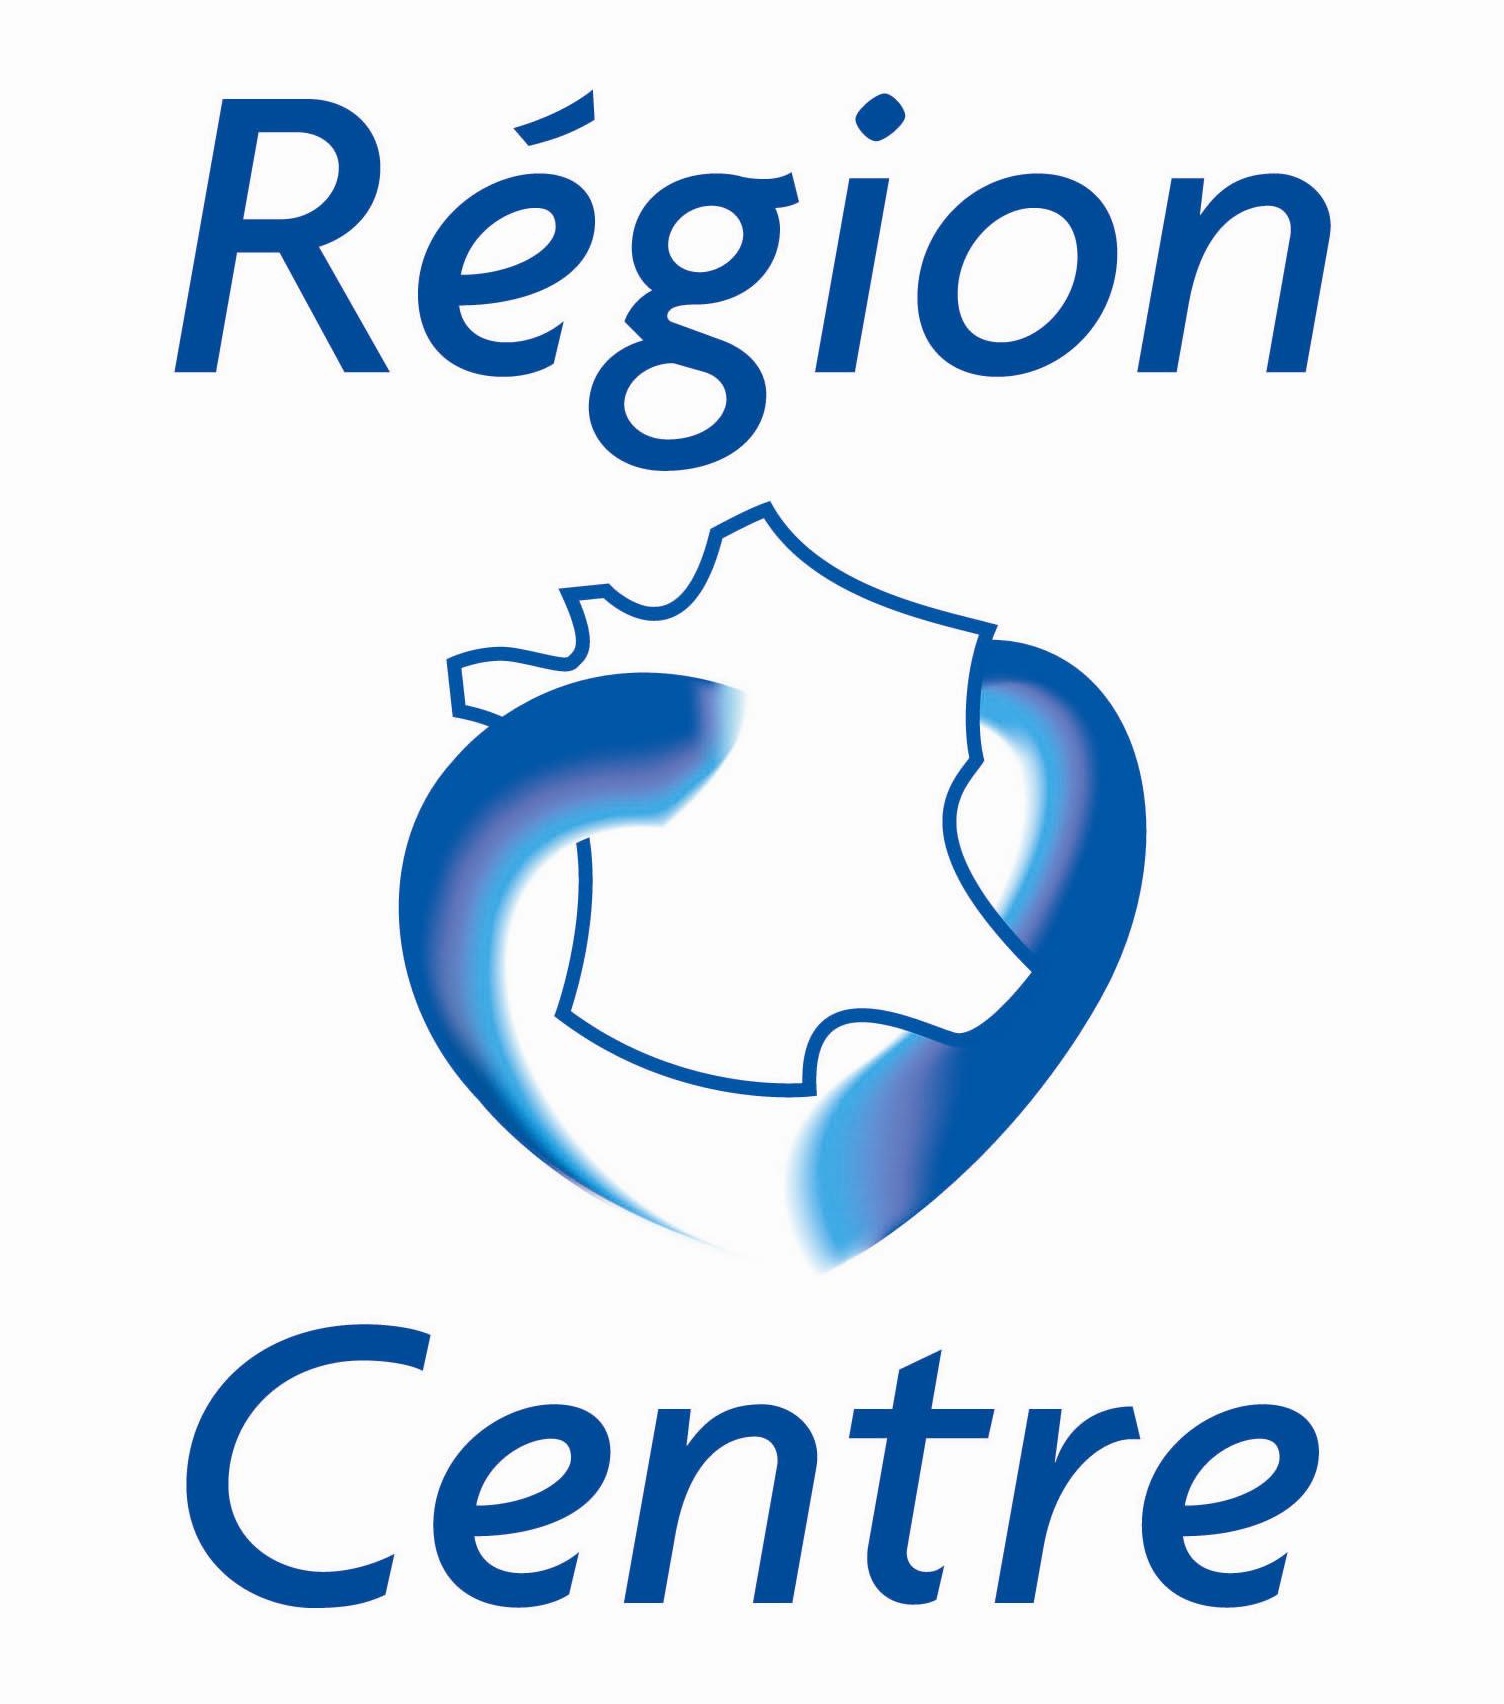 Logo Centre